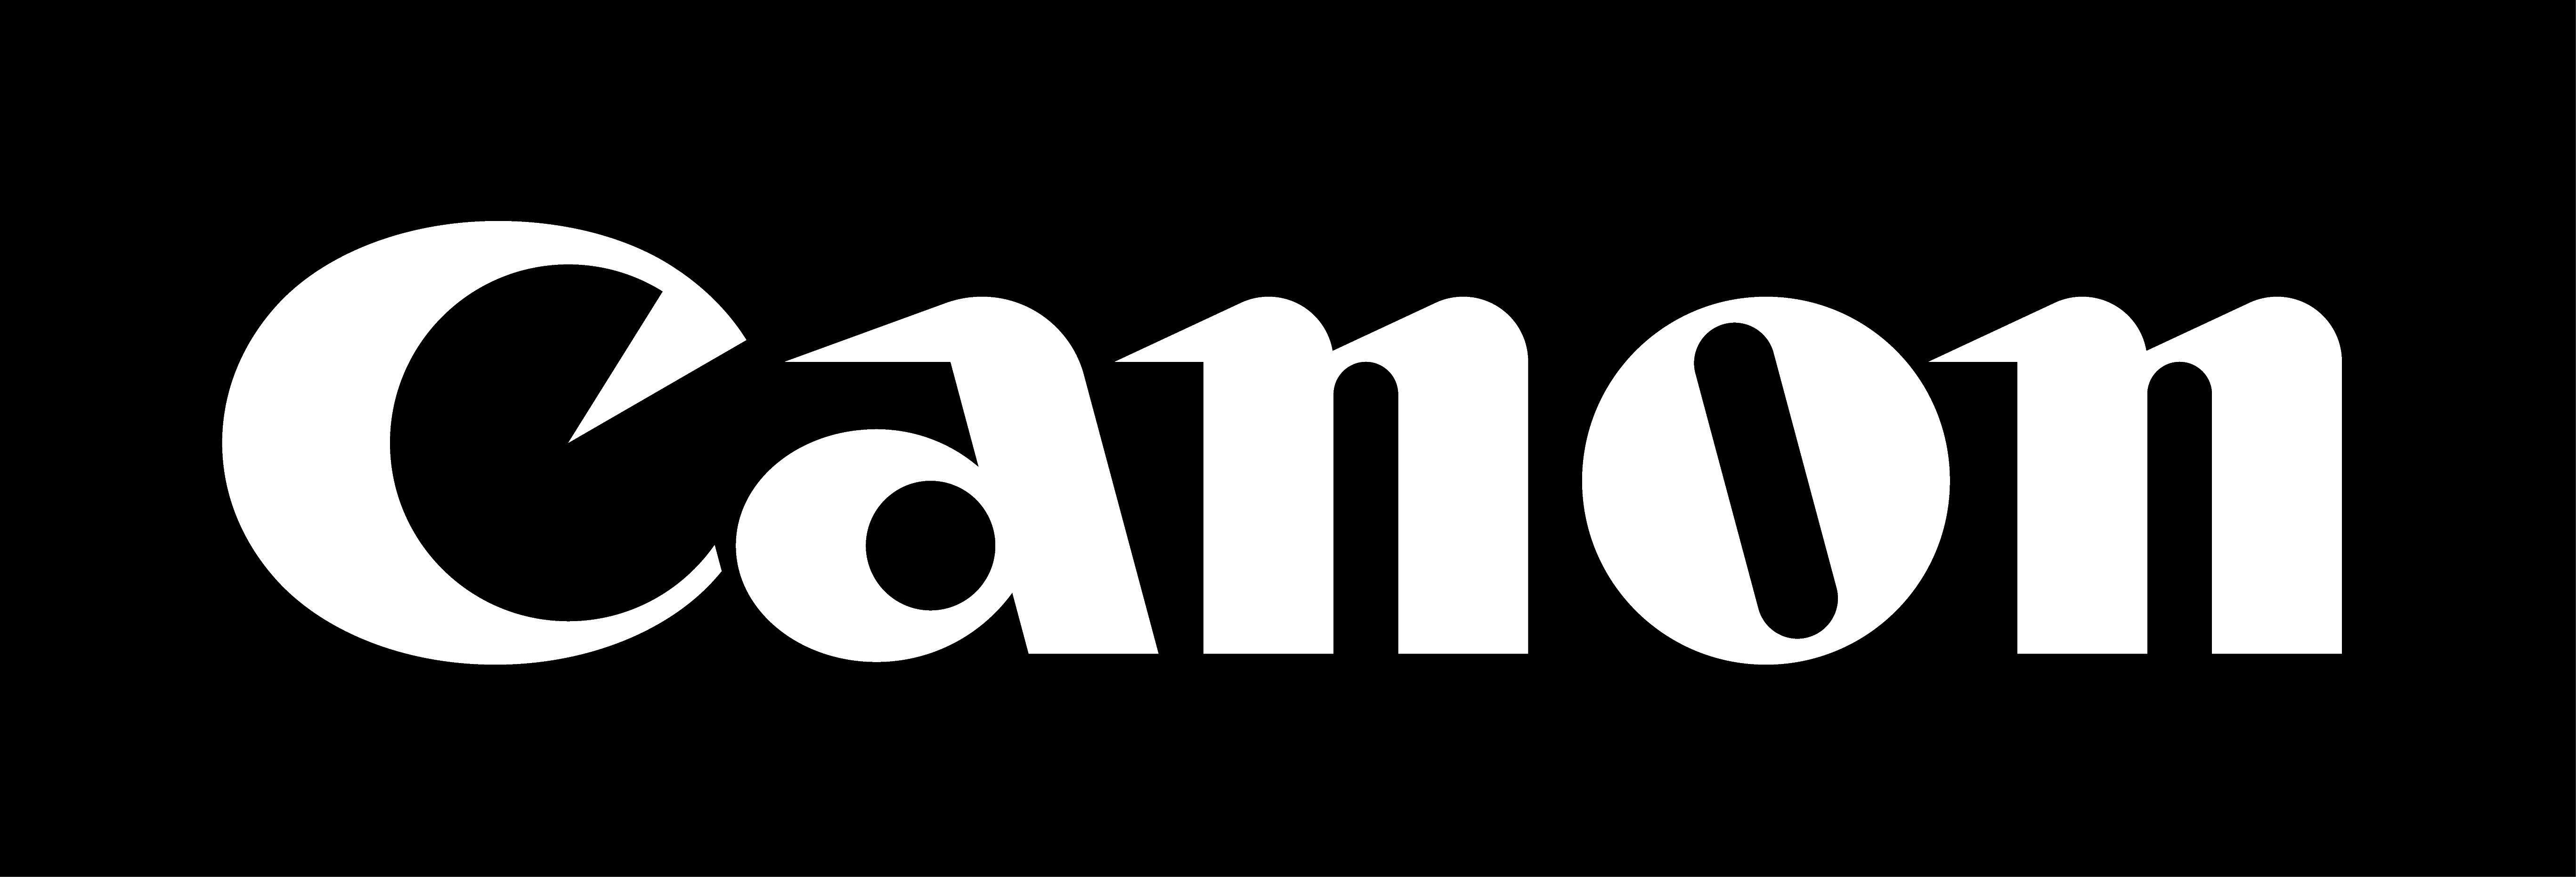 Cannon Logo - Cannon Logos